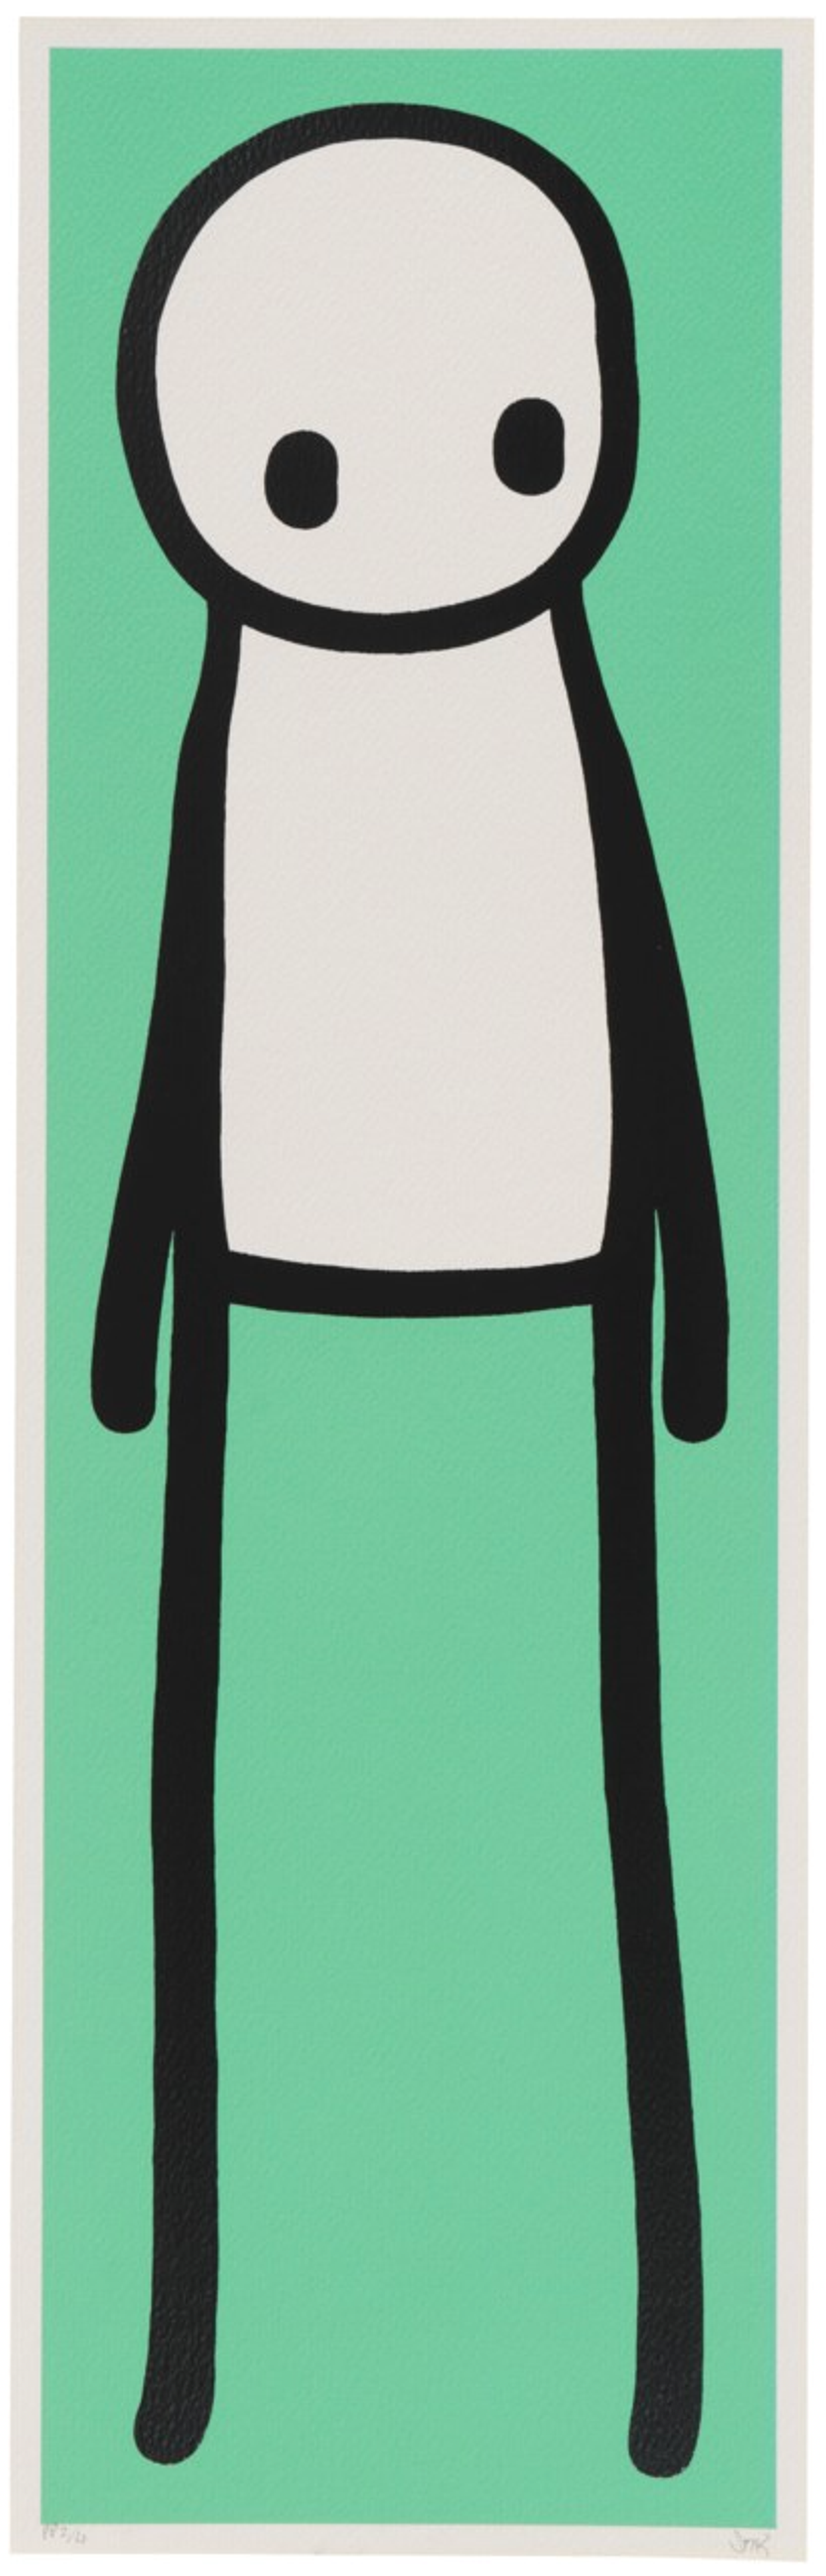 Standing Figure (mint green) (PP) by STIK - MyArtBroker 